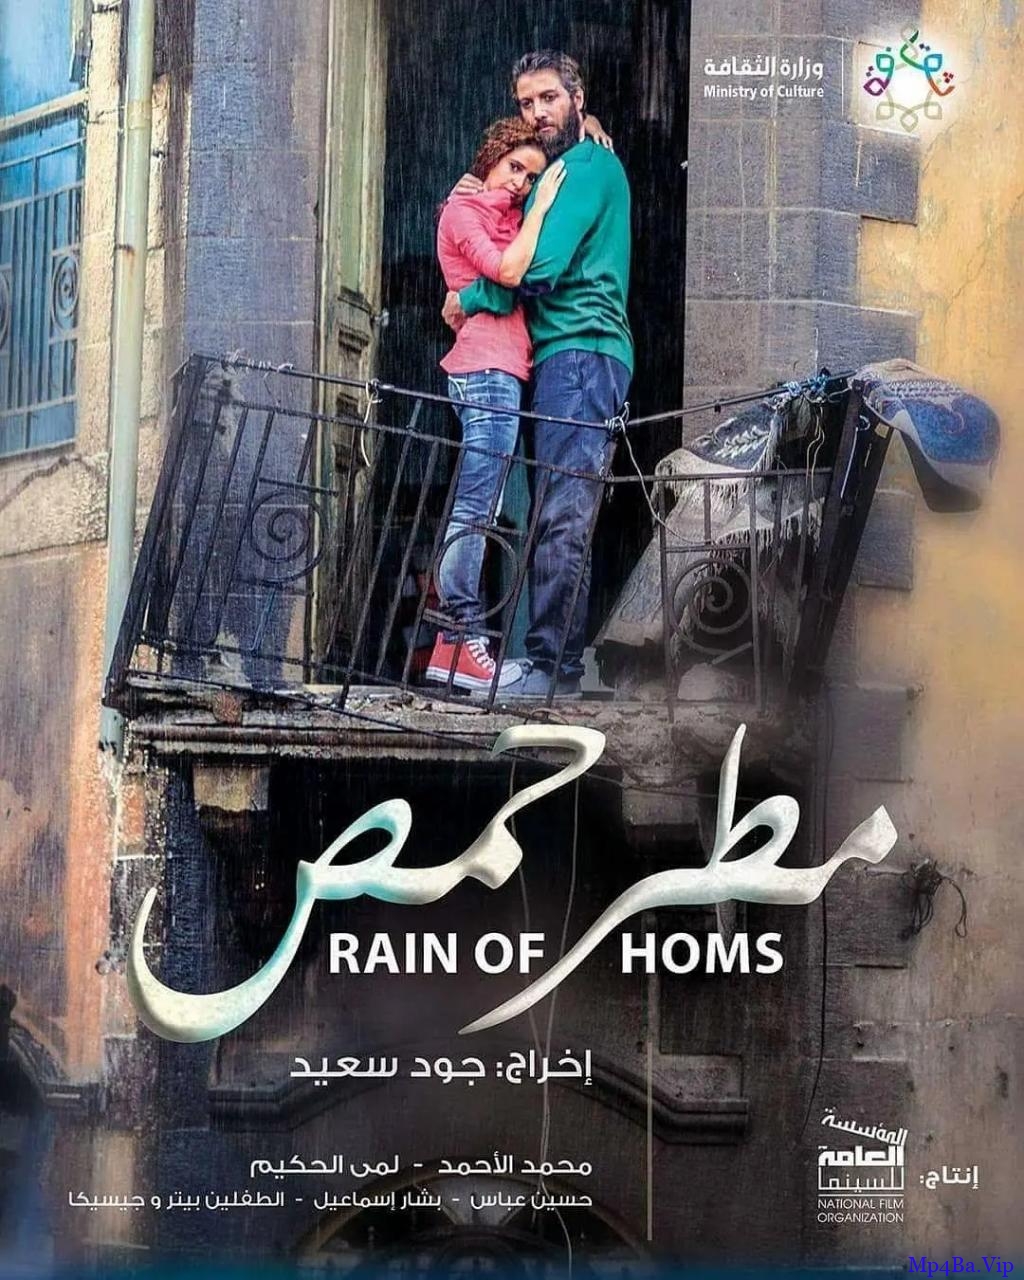 [霍姆斯之雨][HD-MP4/1.7G][阿拉伯语中字][1080P][叙利亚战争纪实]